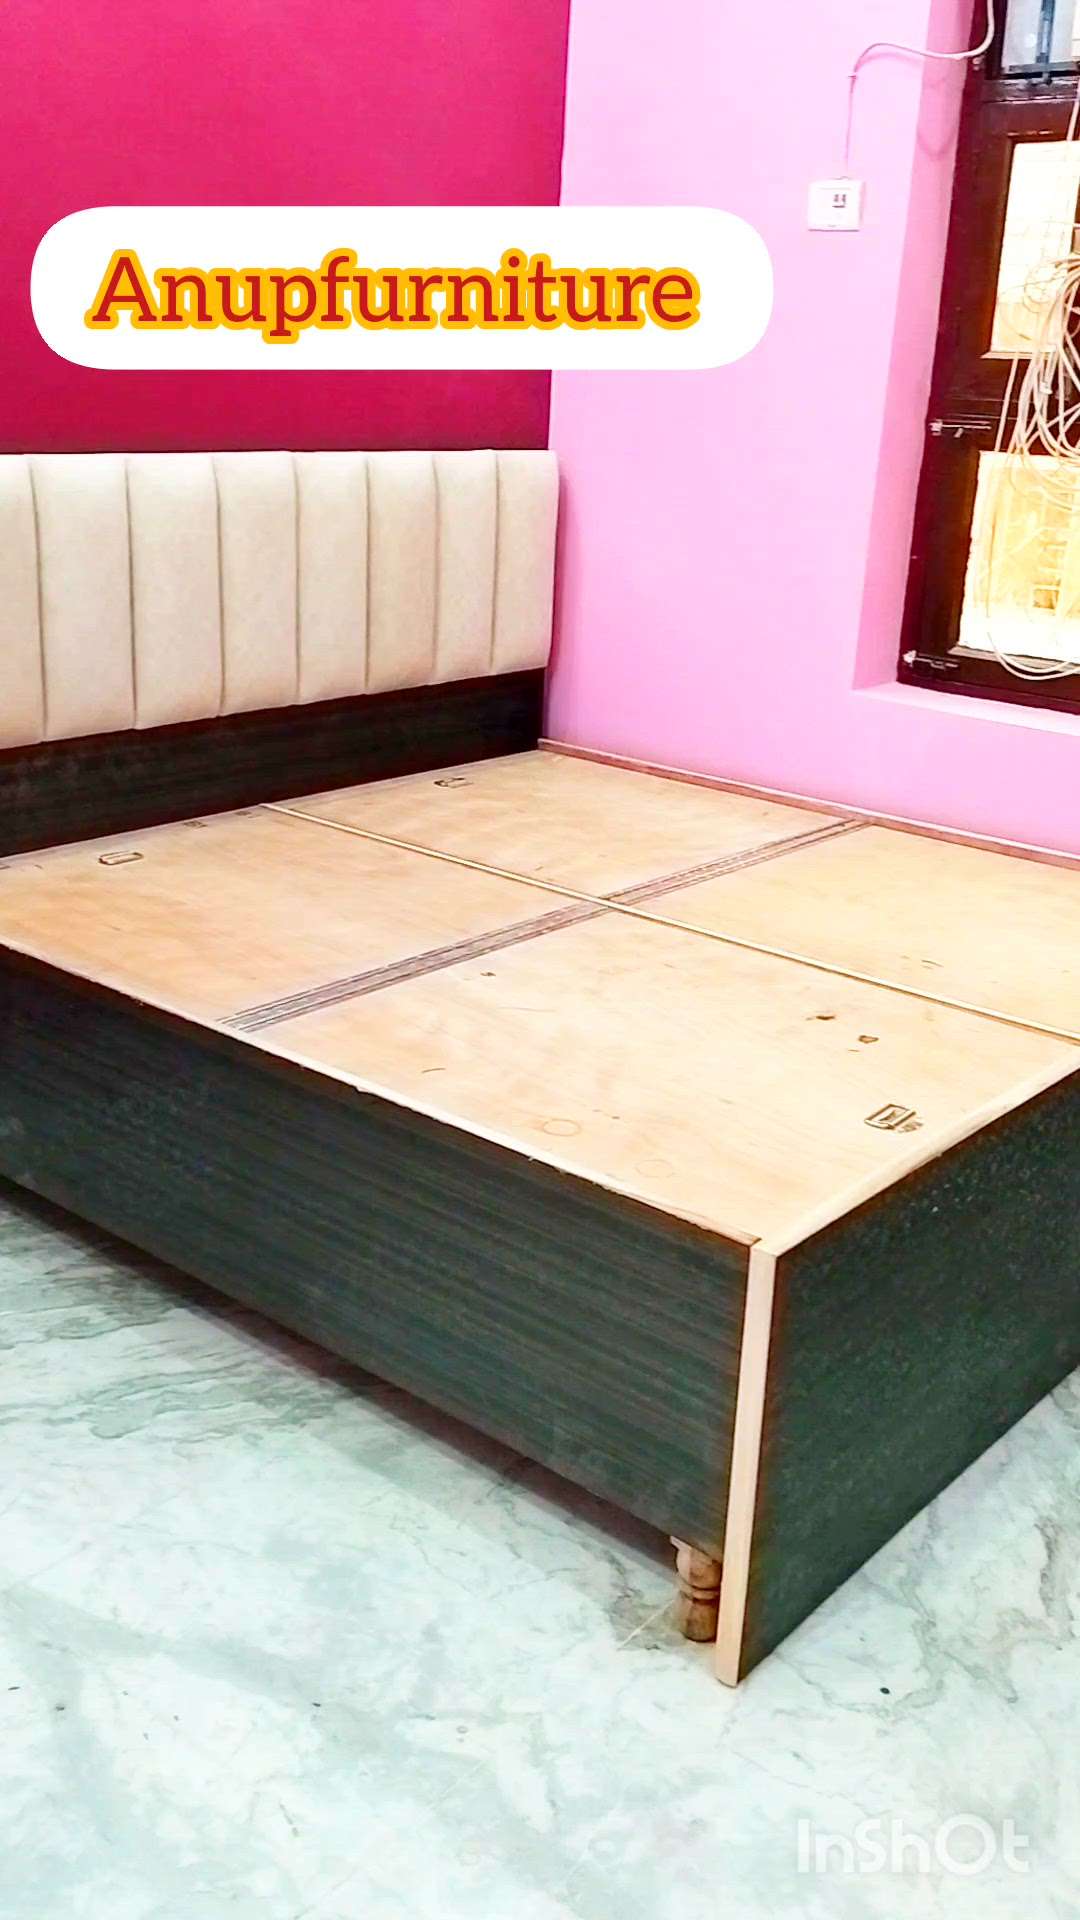 daubal bed design